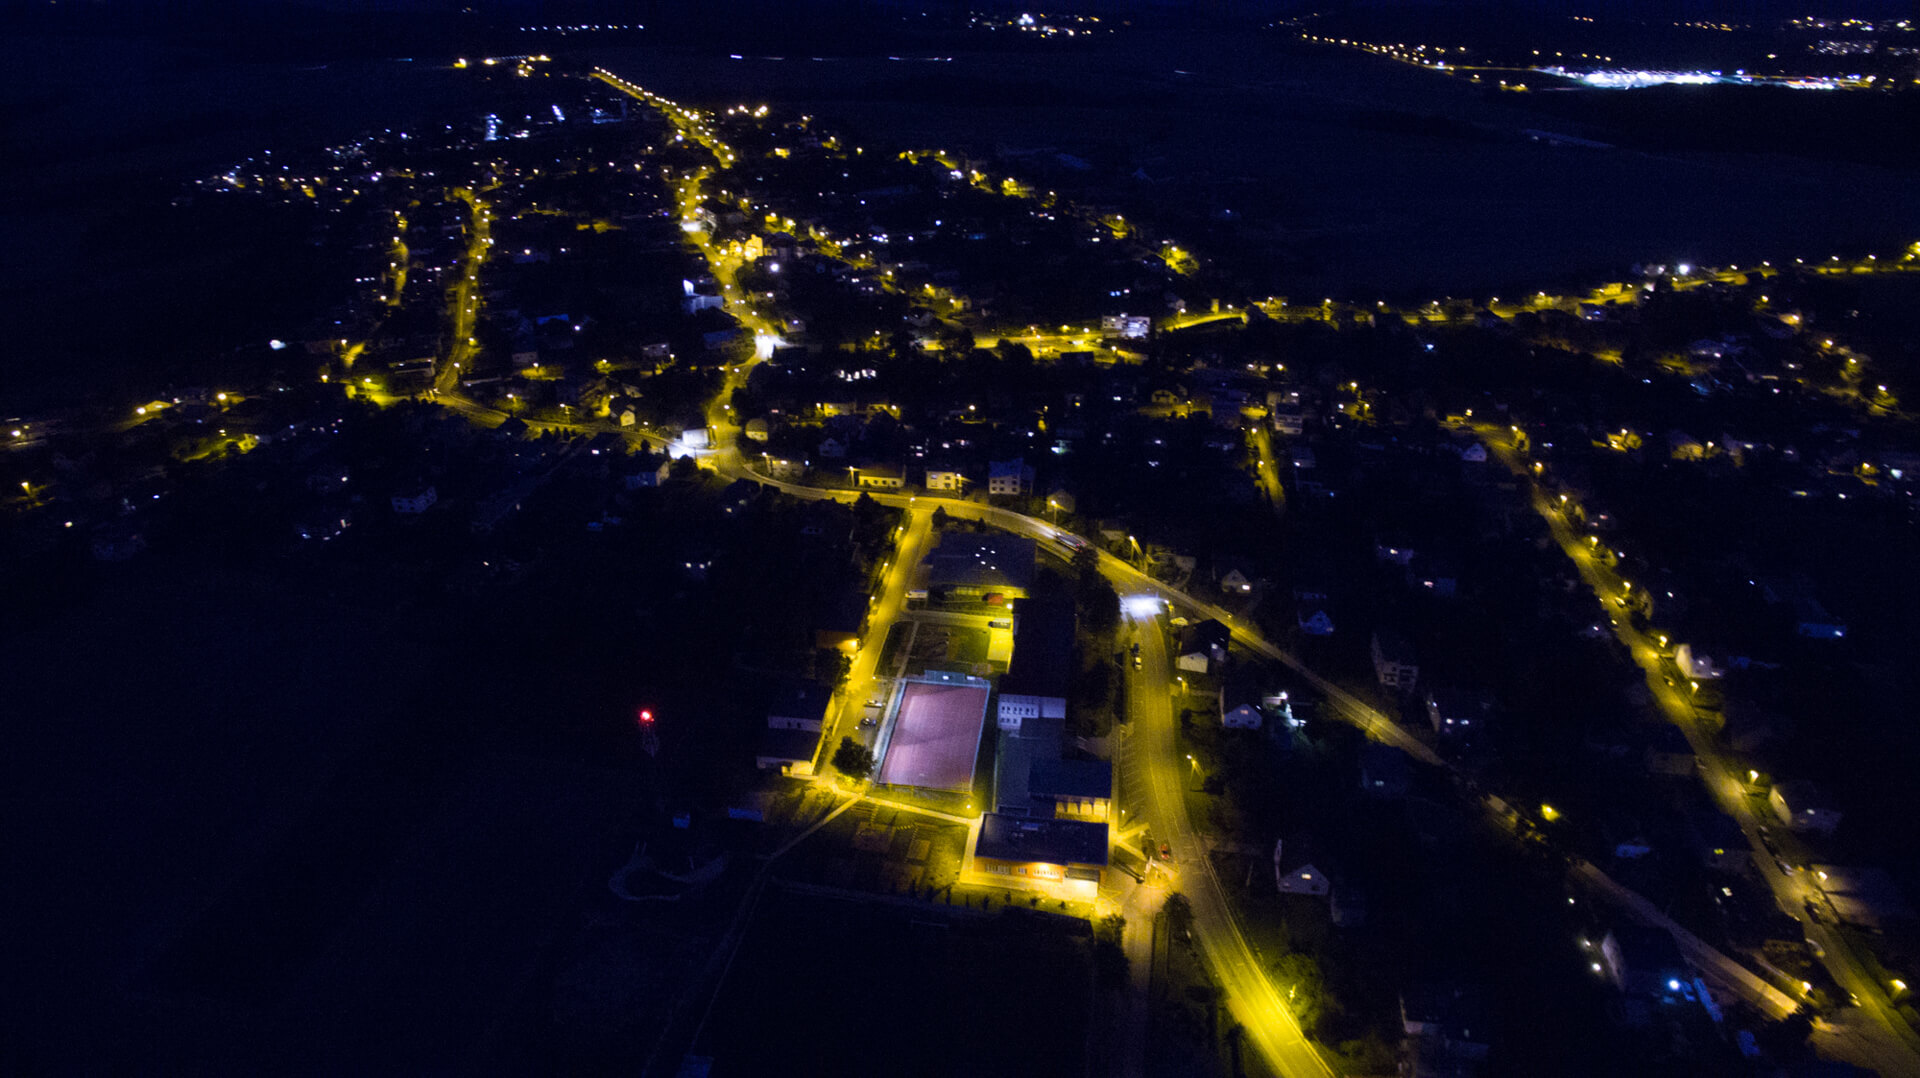 pohled na obec z ptačí perspektivy v noci